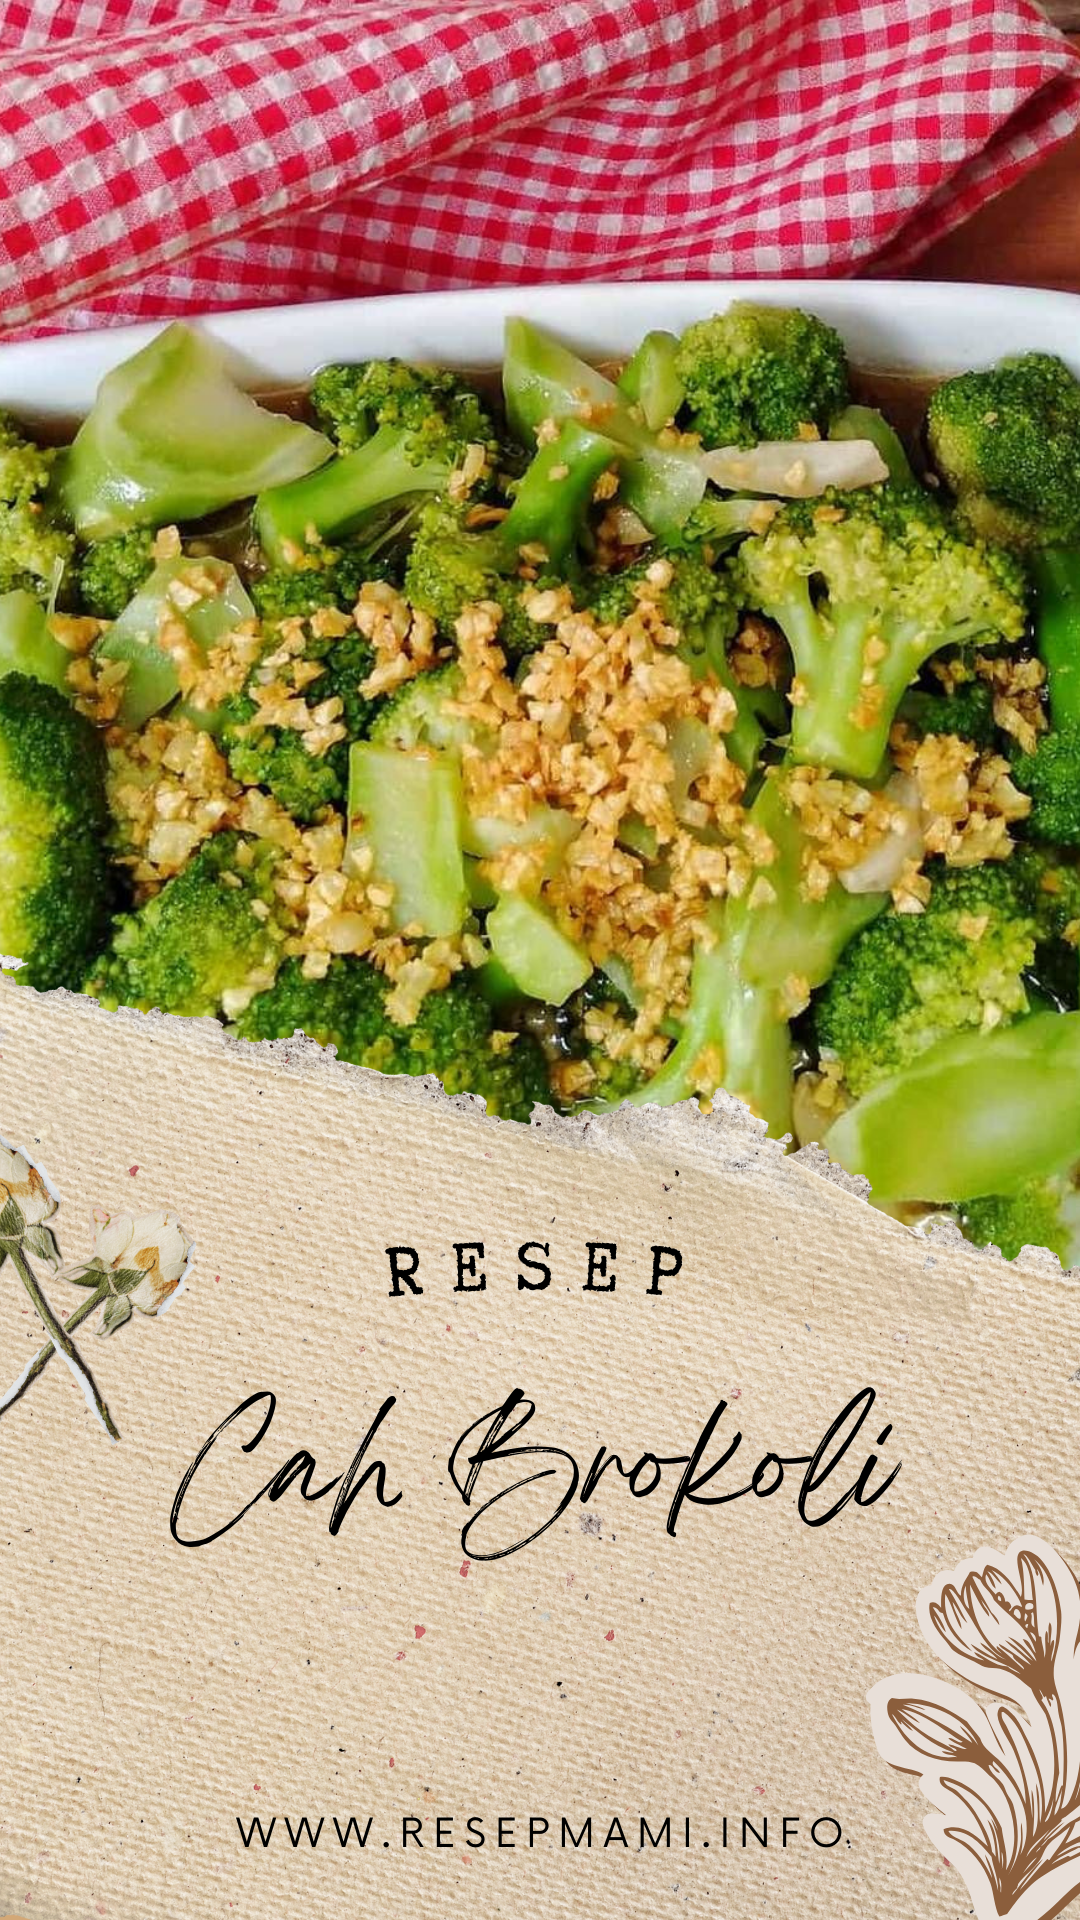 Resep cah brokoli
